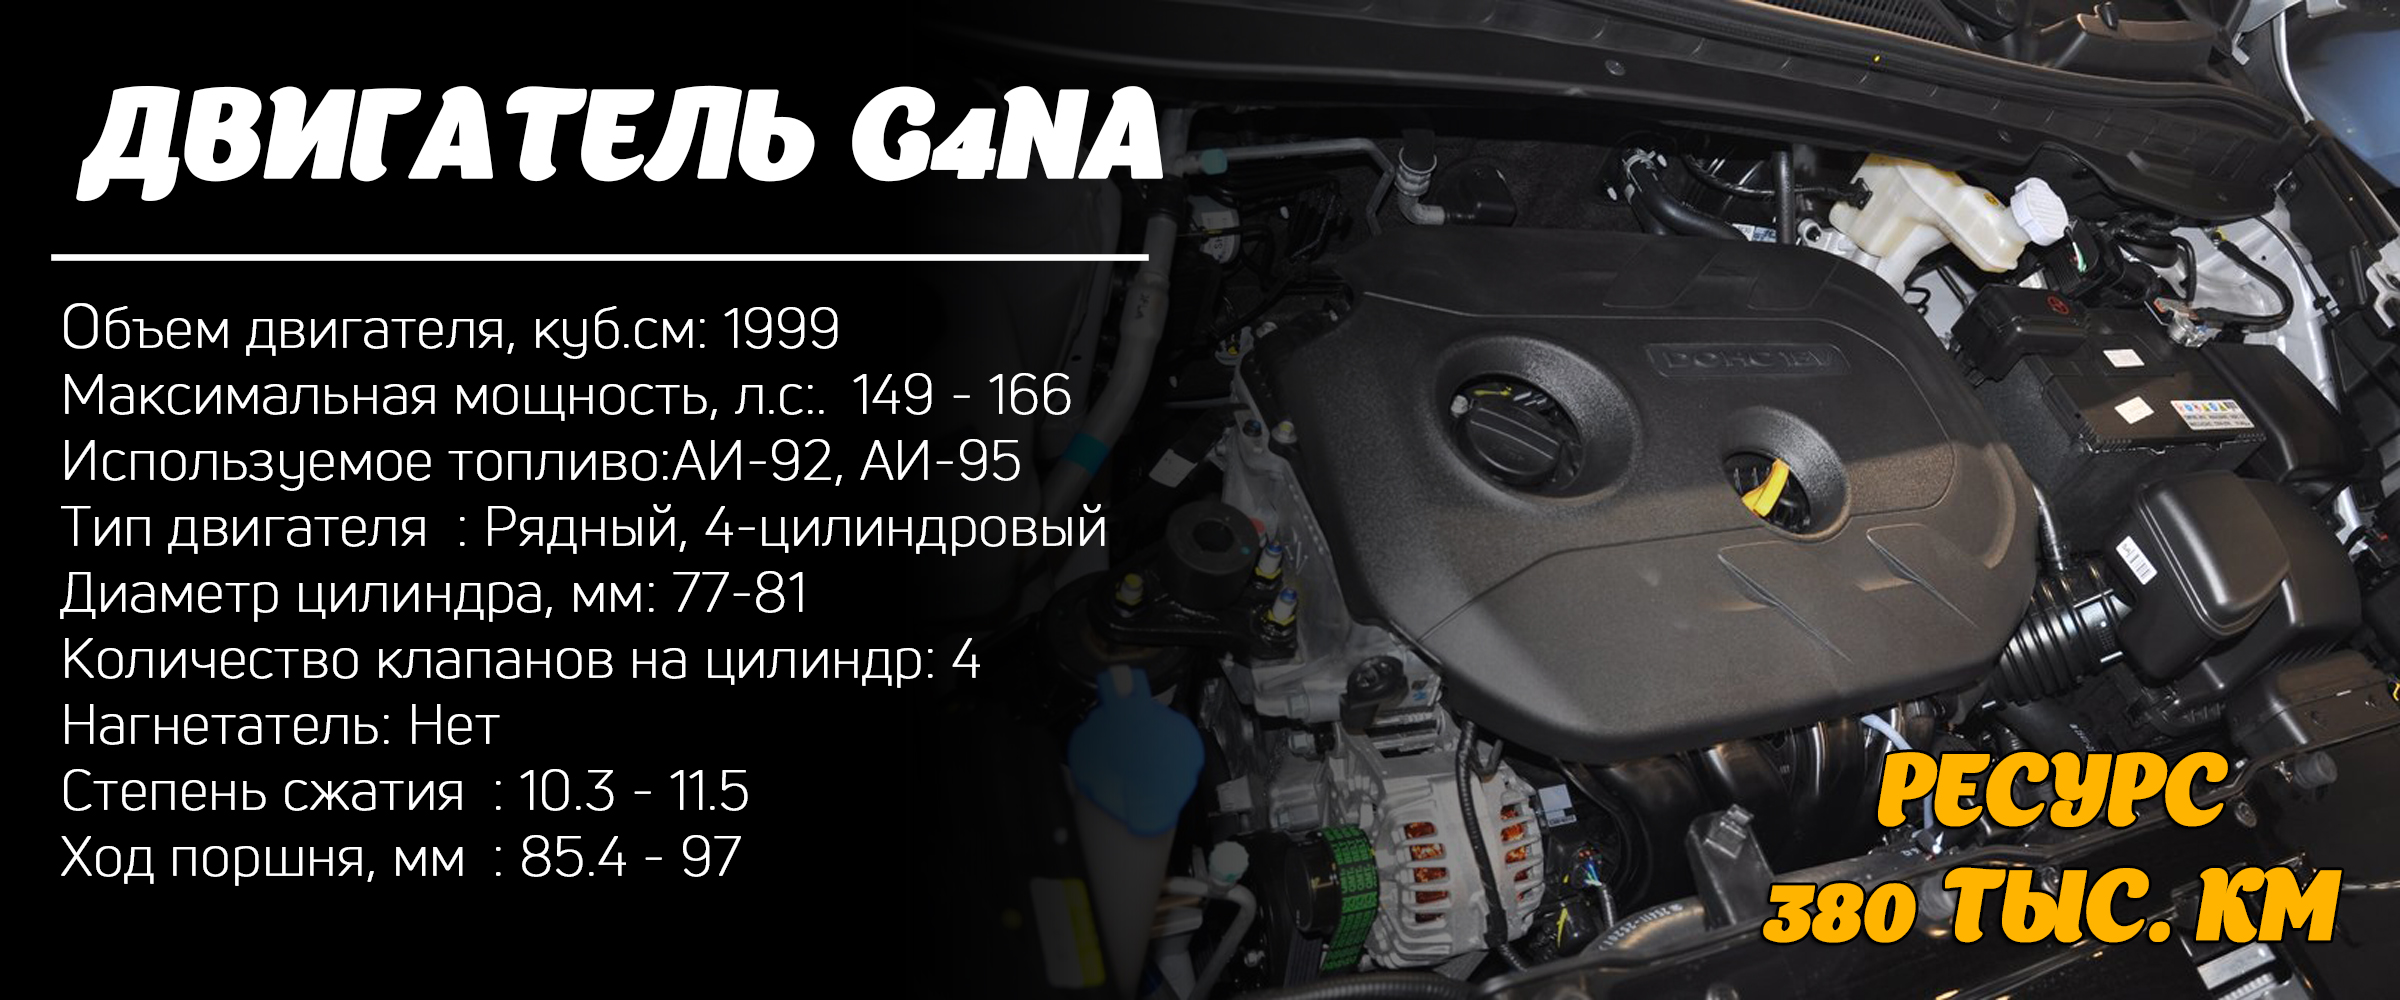 Двигатель G4NA: характеристики и максимальный ресурс